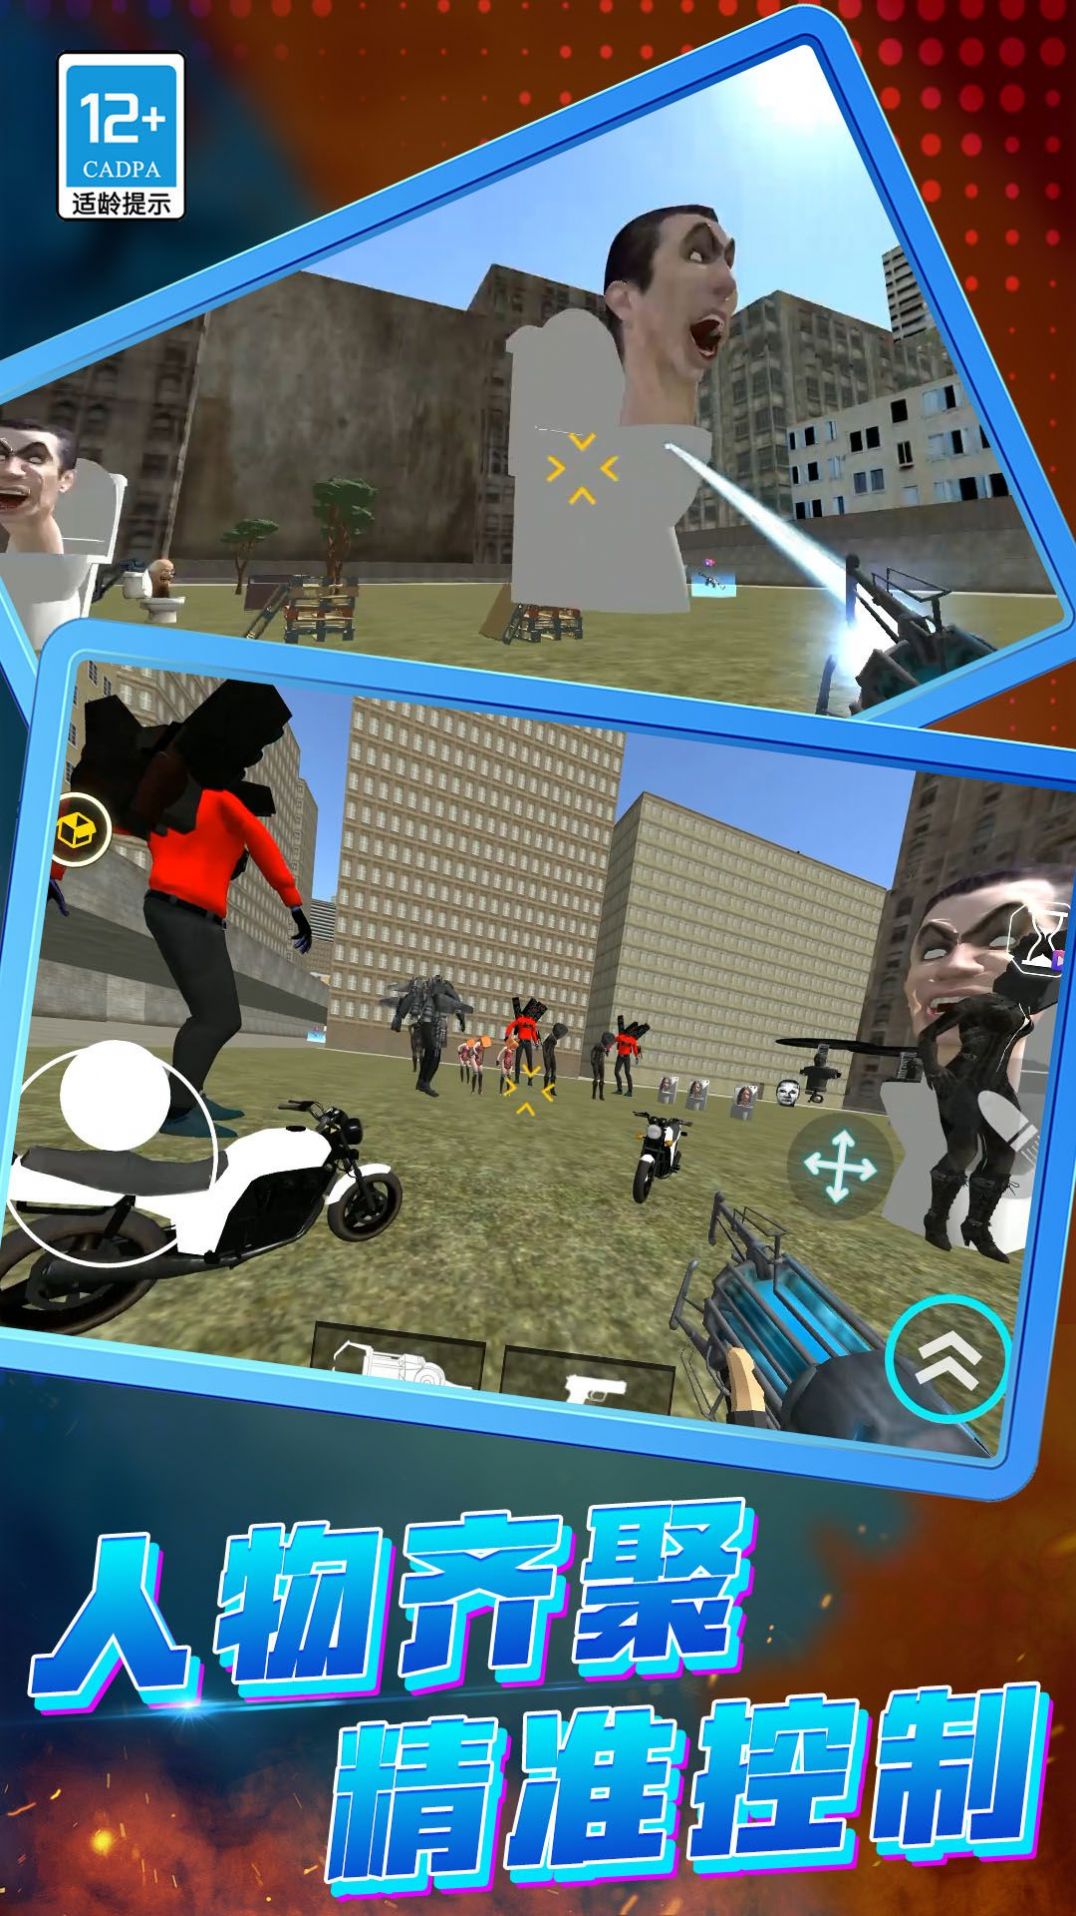 猎鹰突击队FPS游戏安卓版图片1